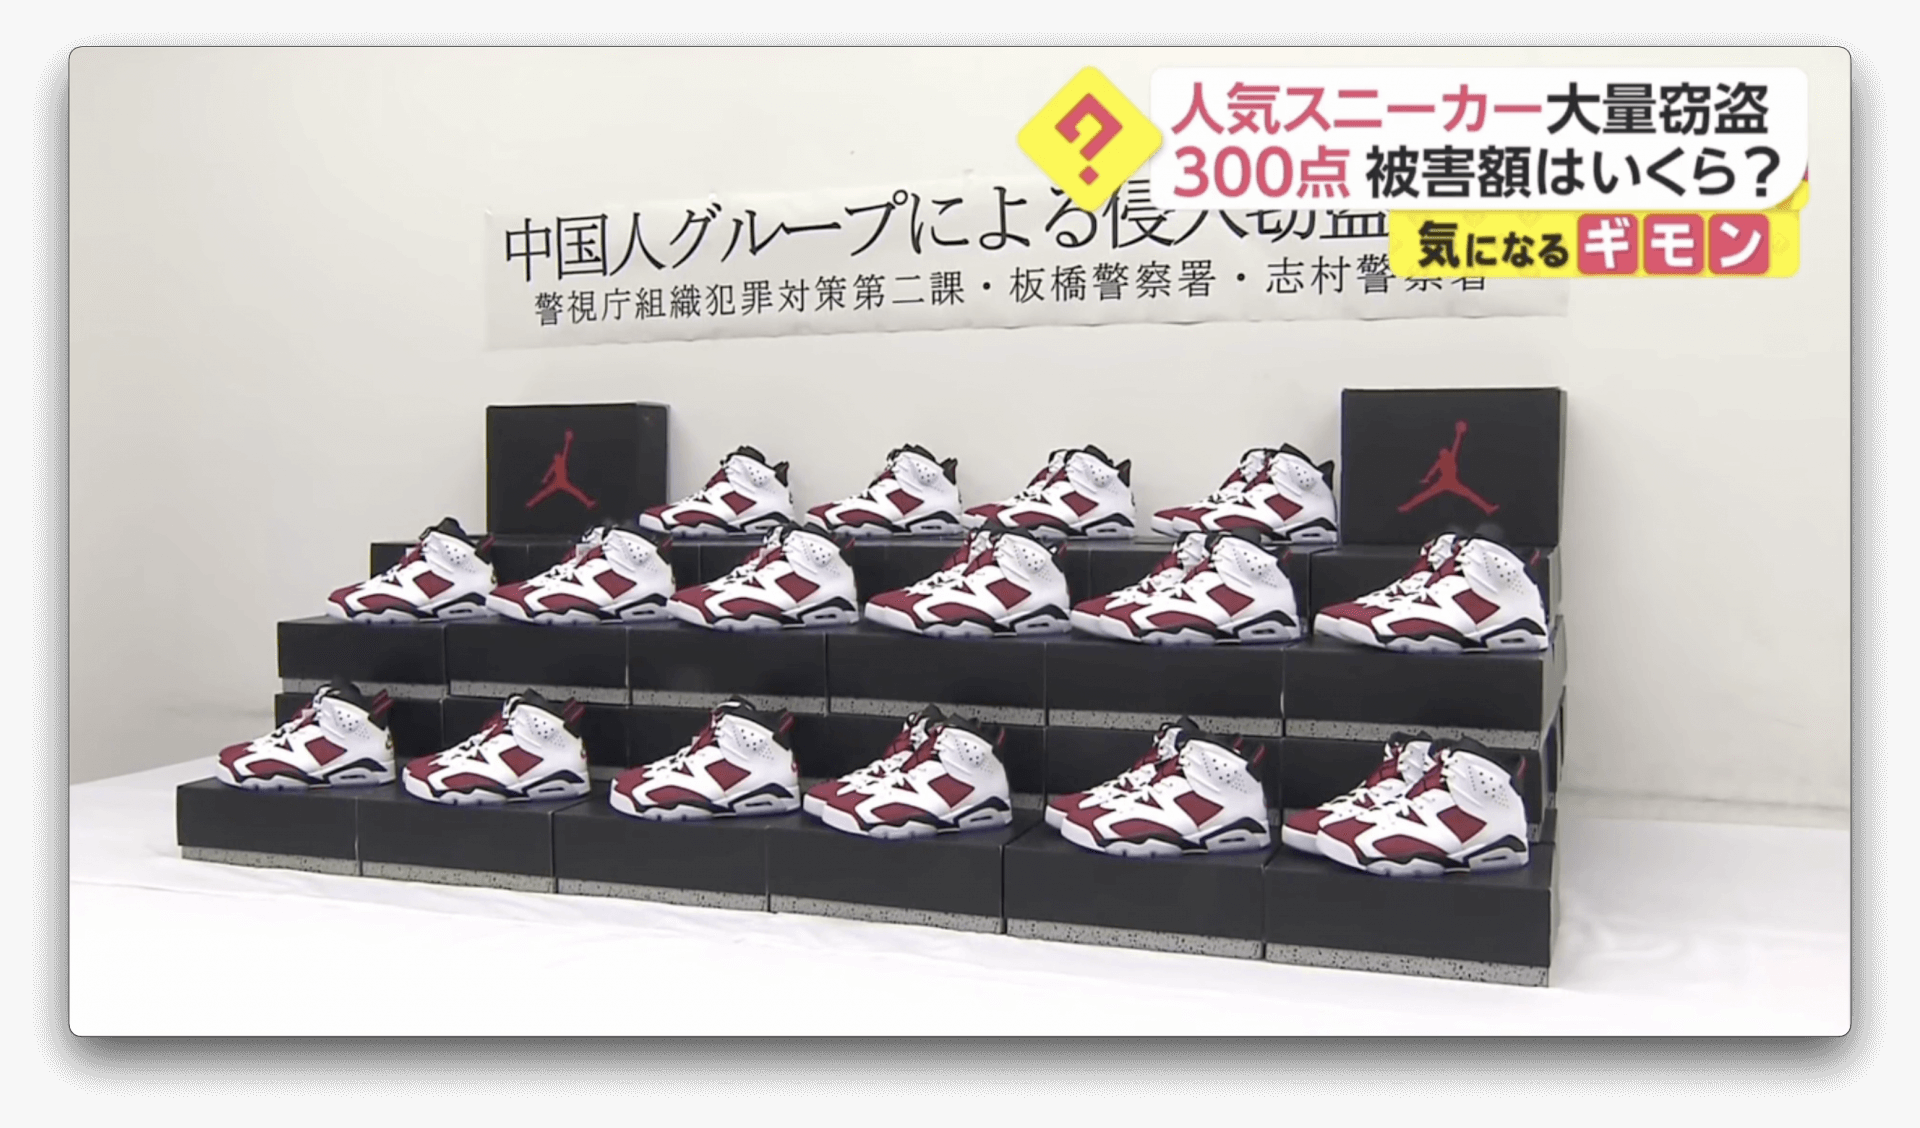 Grupo furta 300 pares de Nike em Tóquio